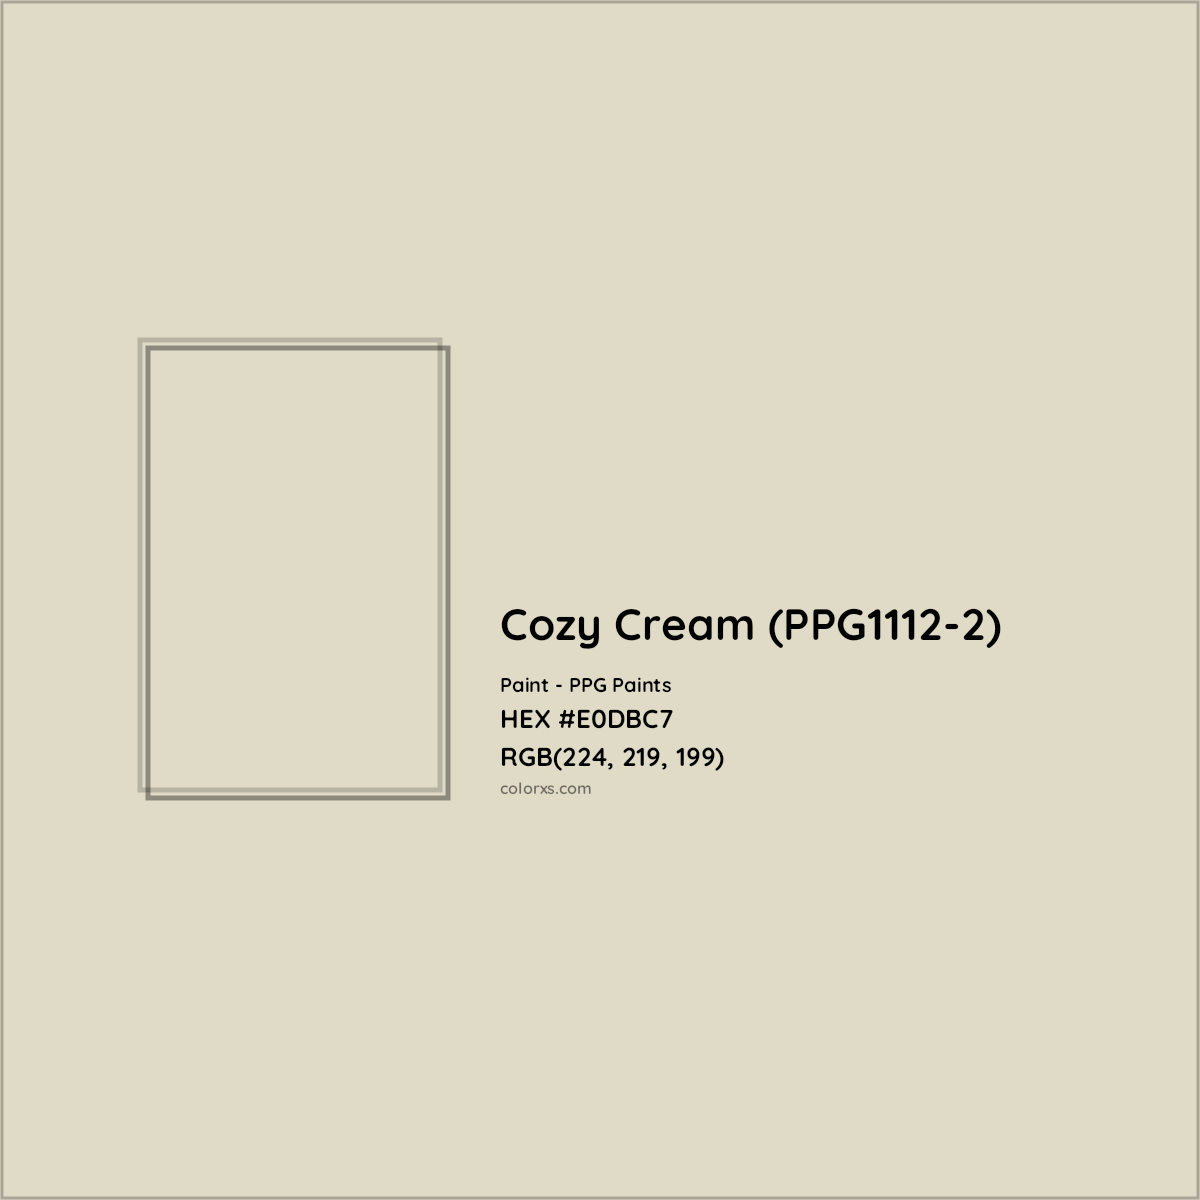 HEX #E0DBC7 Cozy Cream (PPG1112-2) Paint PPG Paints - Color Code